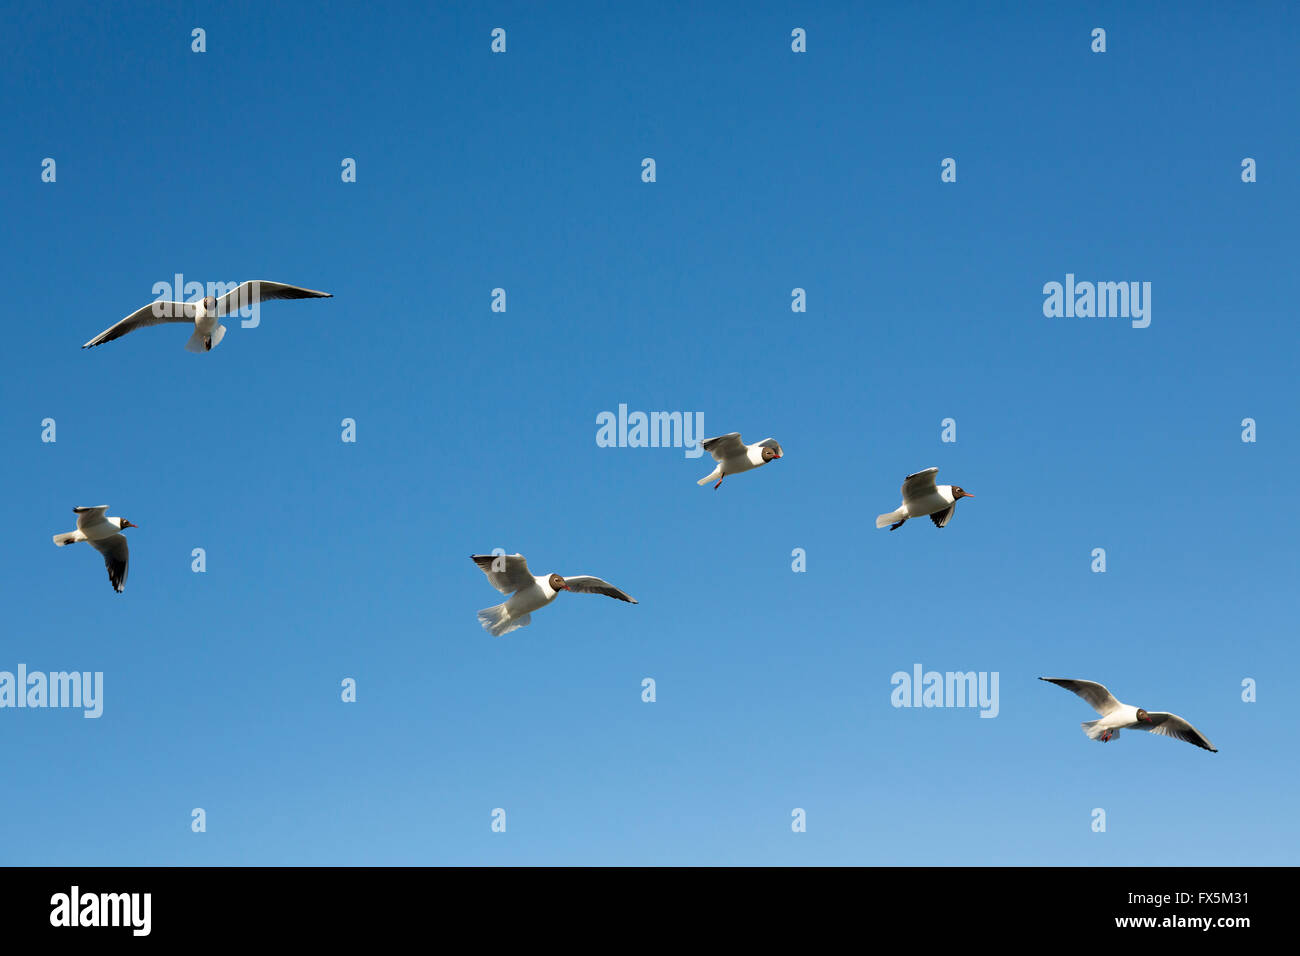 Herde von gemeinsamen europäischen schwarz geleitet Möwen fliegen in einem klaren blauen Himmel. Die meisten der Gruppe bewegen links nach rechts. Stockfoto